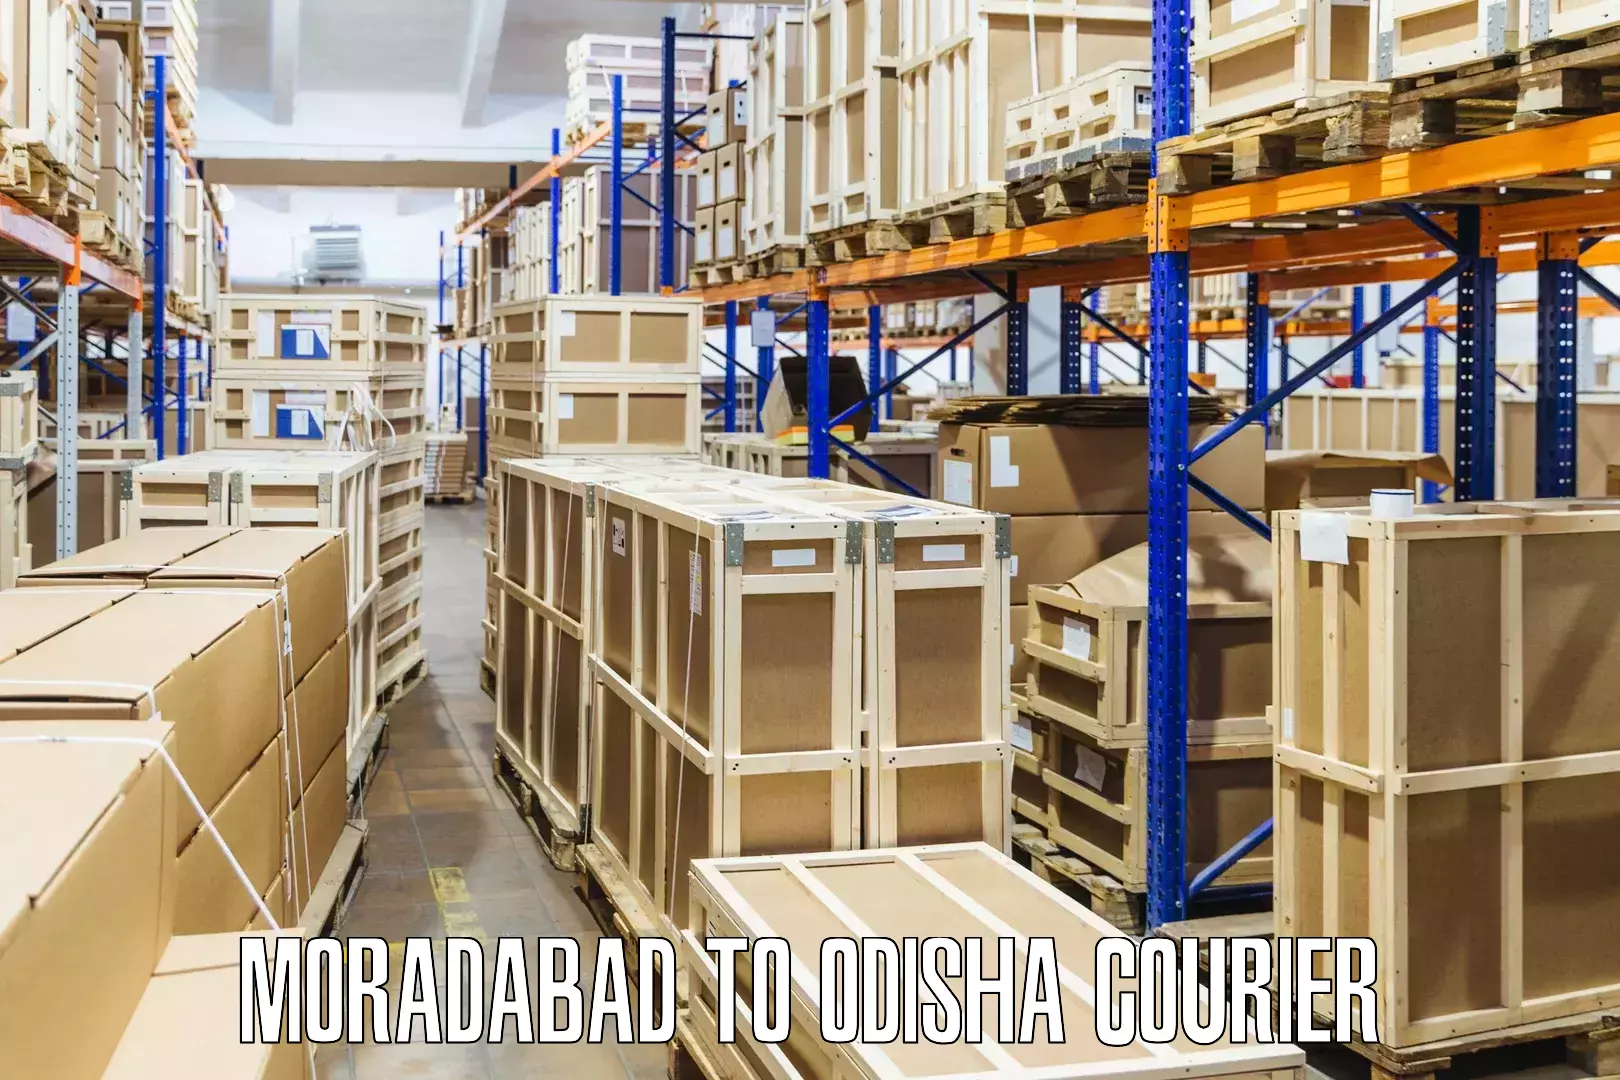 Courier service booking Moradabad to Birmitrapur